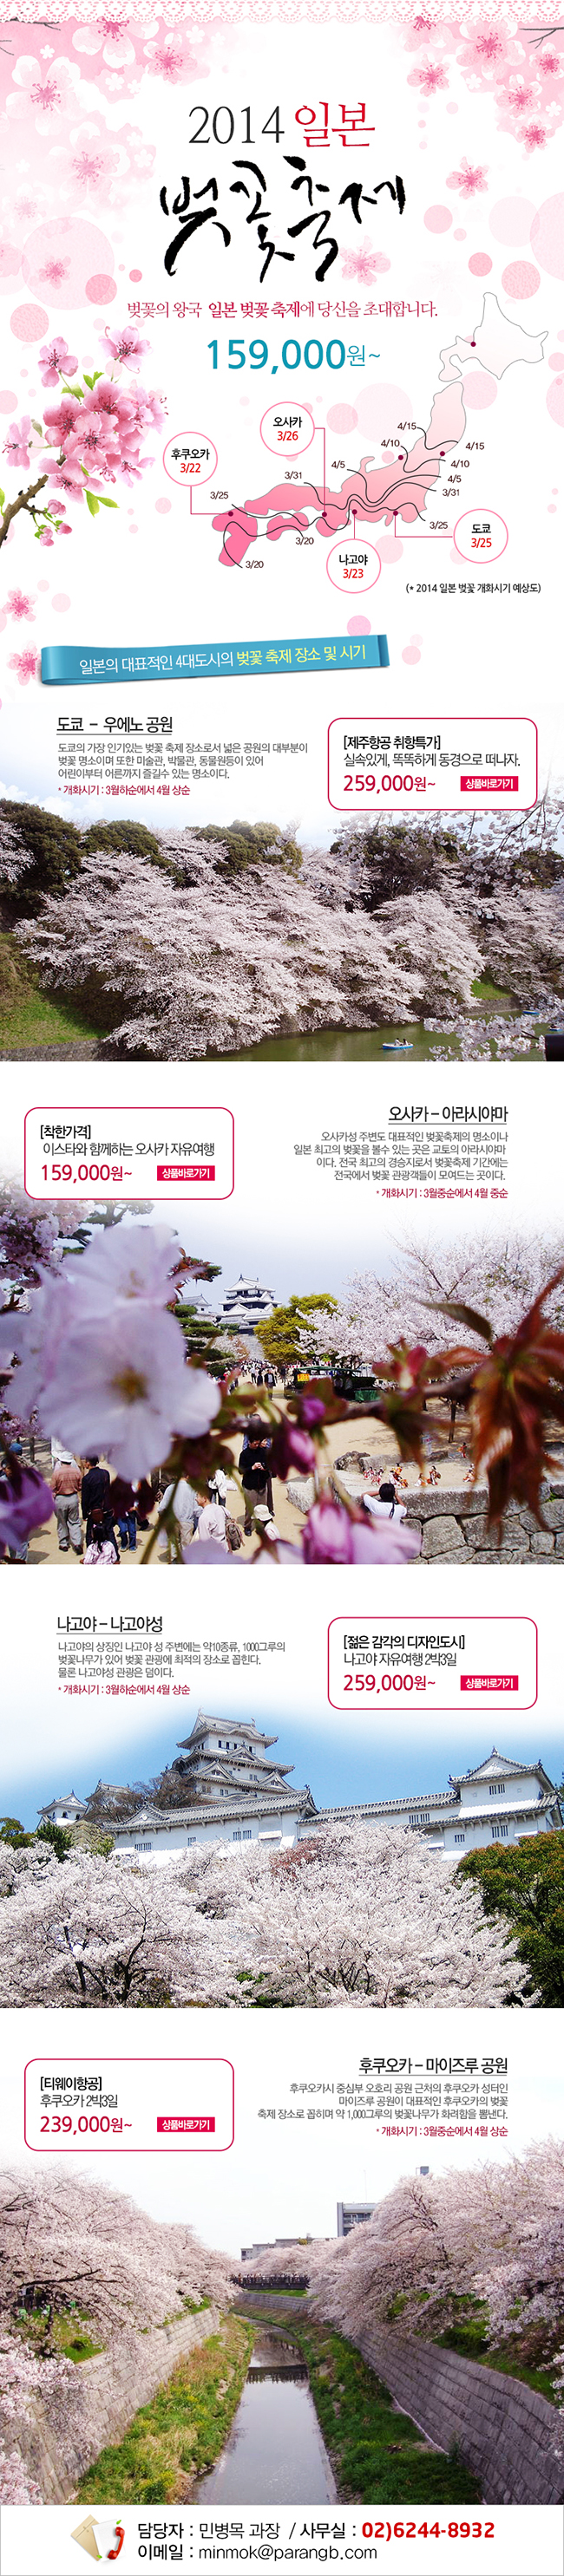 파랑풍선, 일본 벚꽃 축제 기획전 출시 “3월 말부터 벚꽃 여행 떠나세요~” 